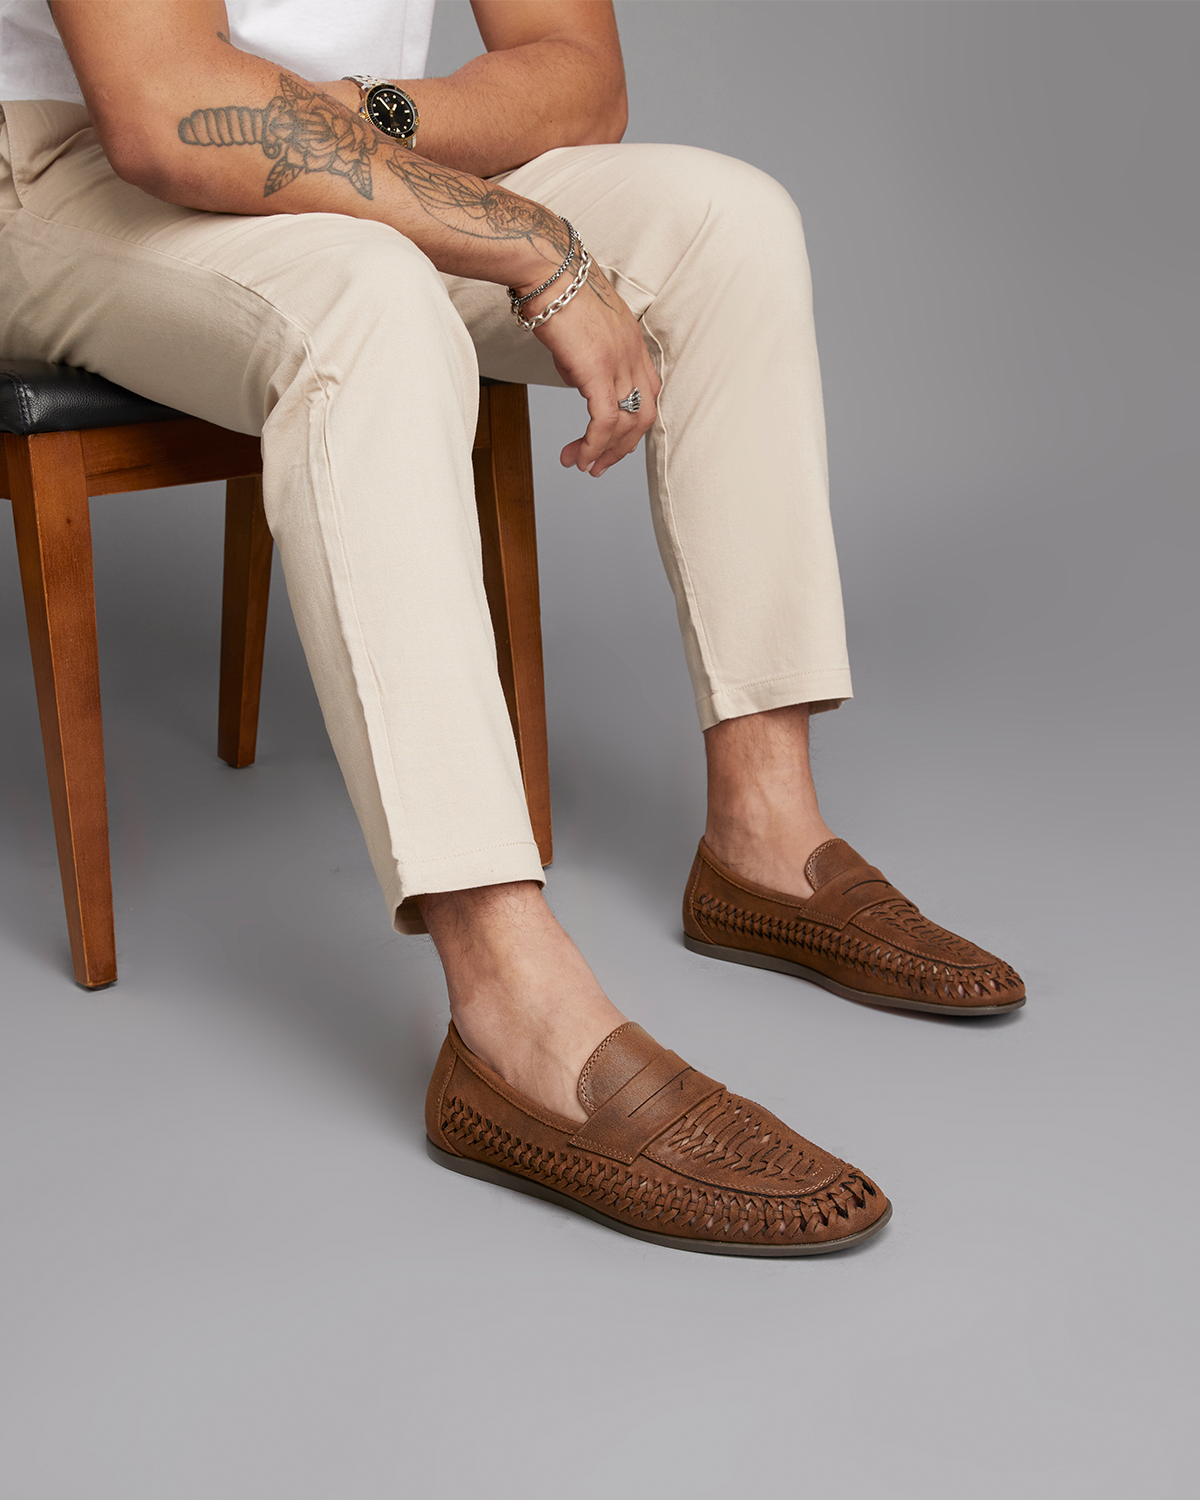 Uncut Shoes Miguel Tan | Men's Huarache | Loafer | Slip On | Woven 